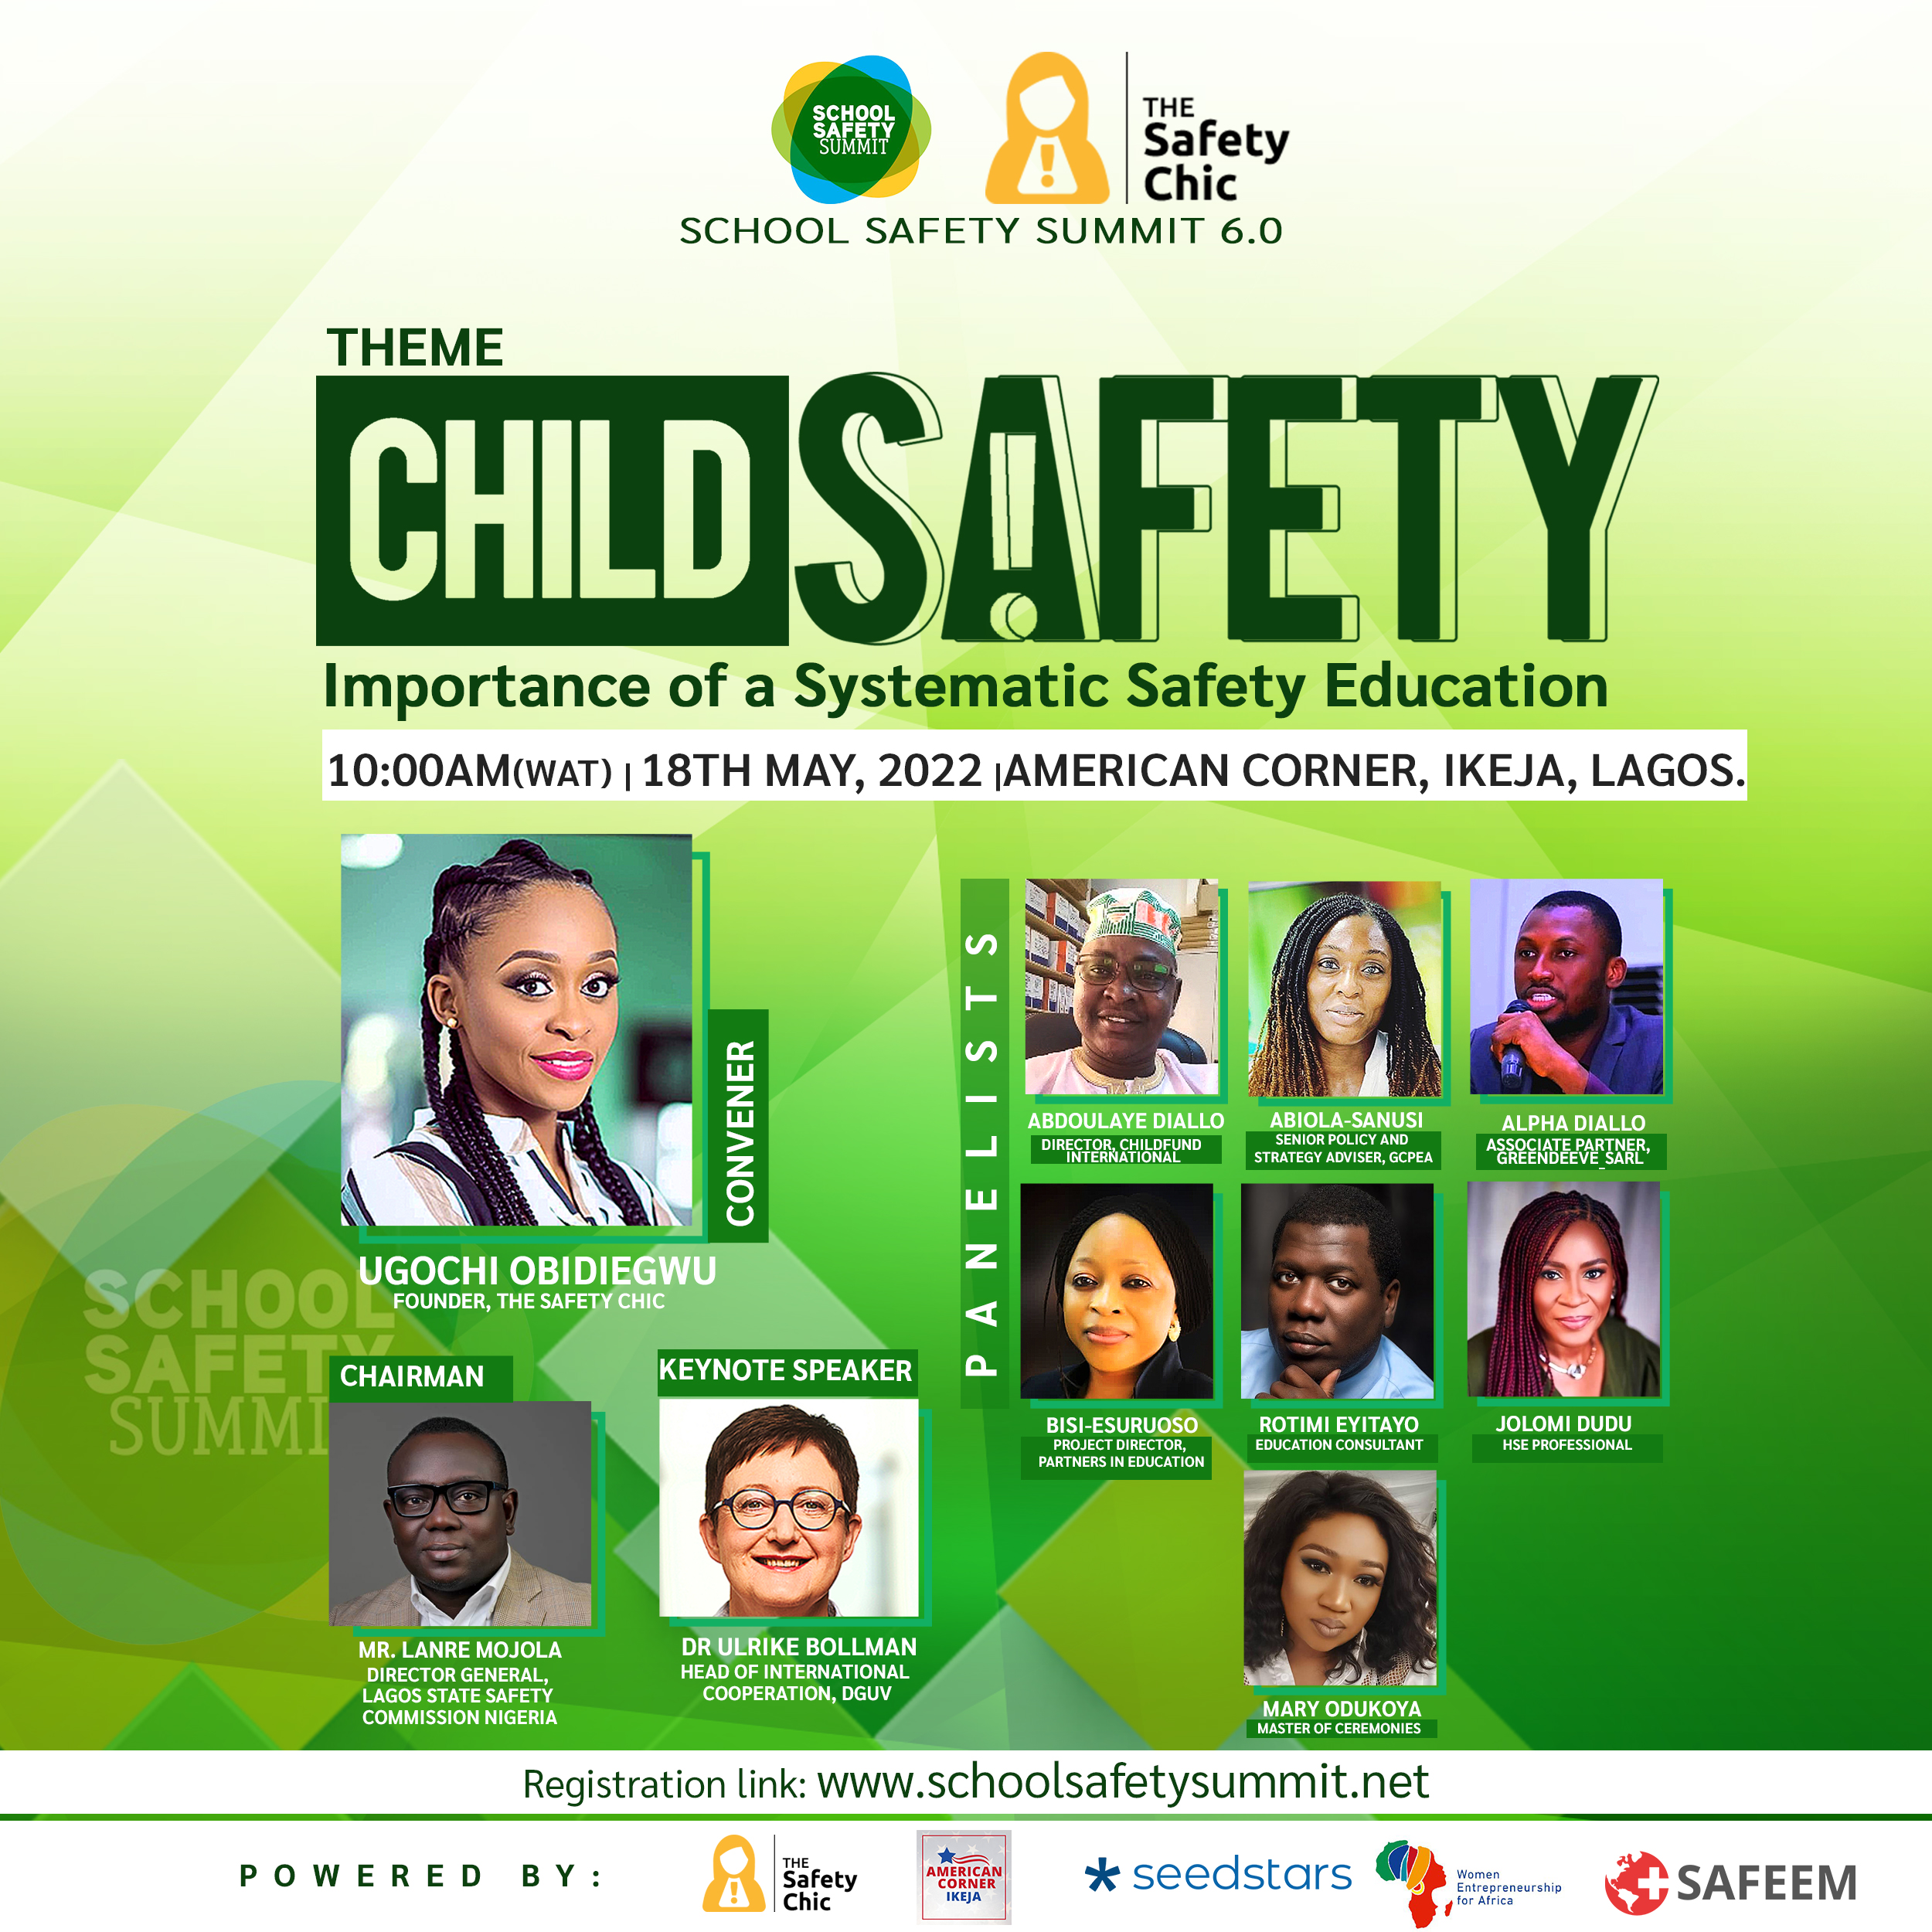 School Safety Summit Nigeria 2022